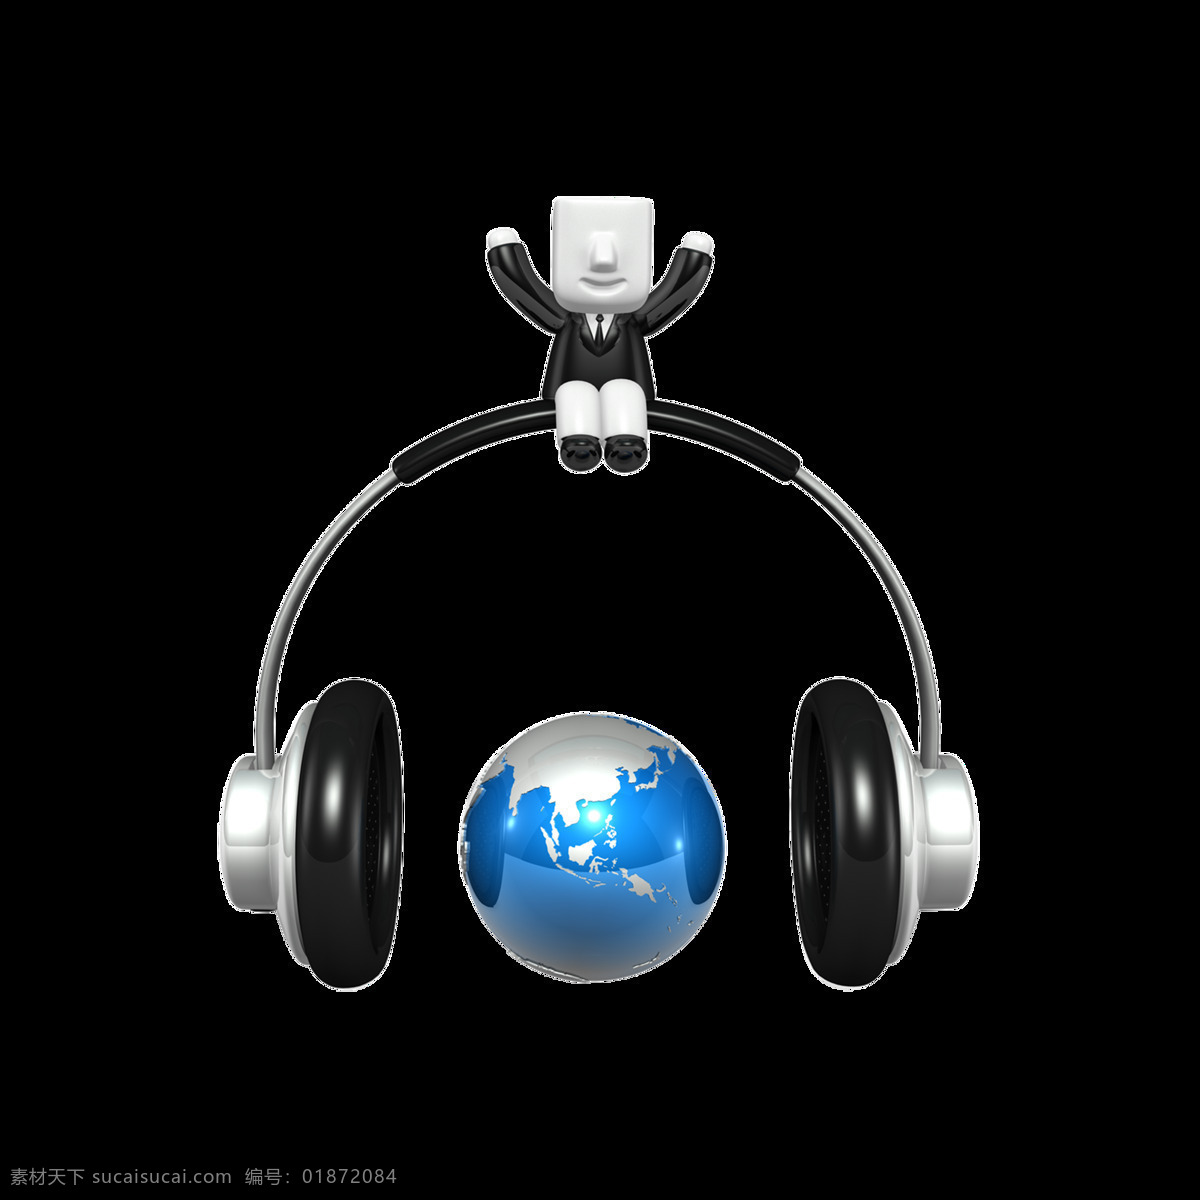 卡拉 ok 音乐 耳机 3d 小人 元素 世界 地球